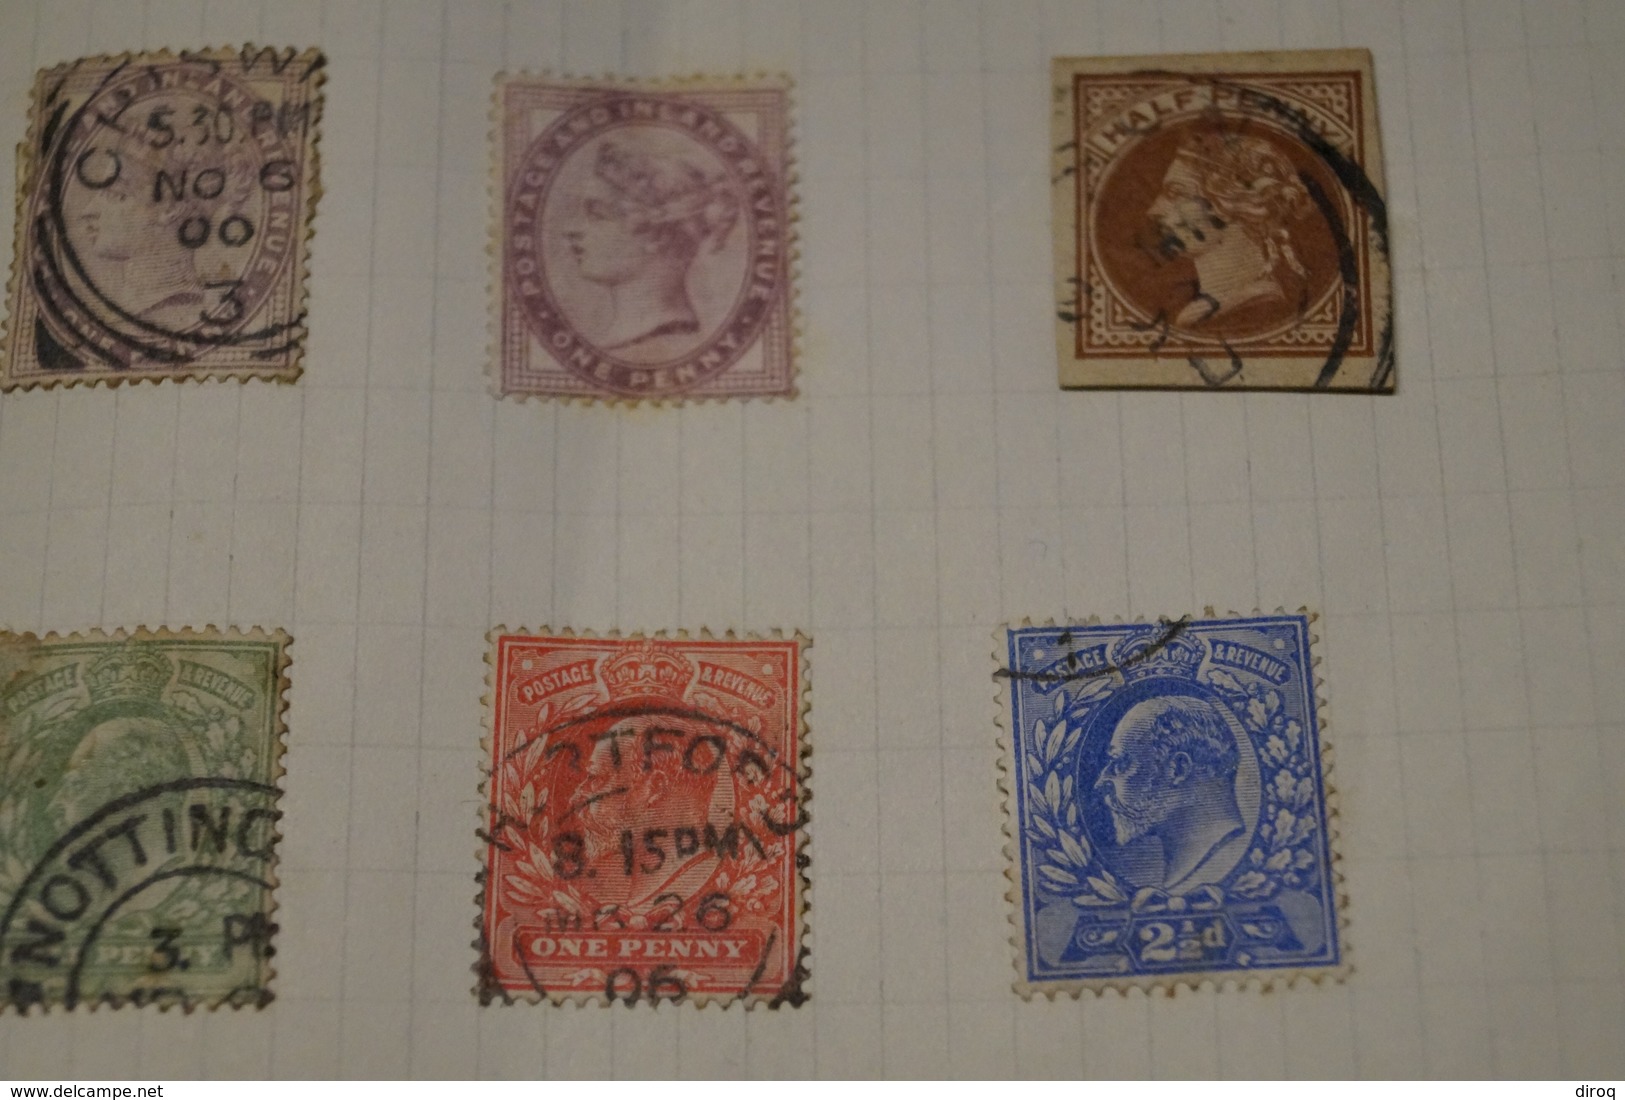 important lot de 17 anciens timbres avec belles oblitérations,timbres anciens,sur charnière,UK,pour collection